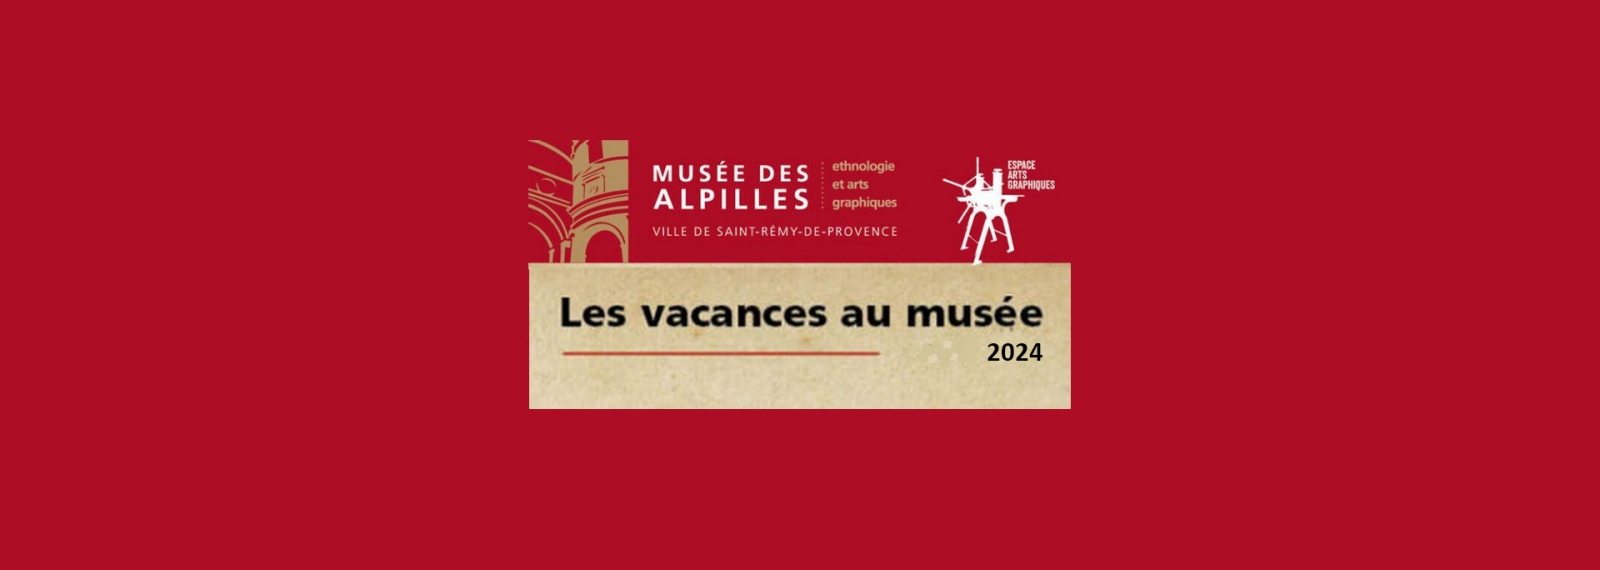 Vacances au musée des Alpilles à Saint-Rémy-de-Provence